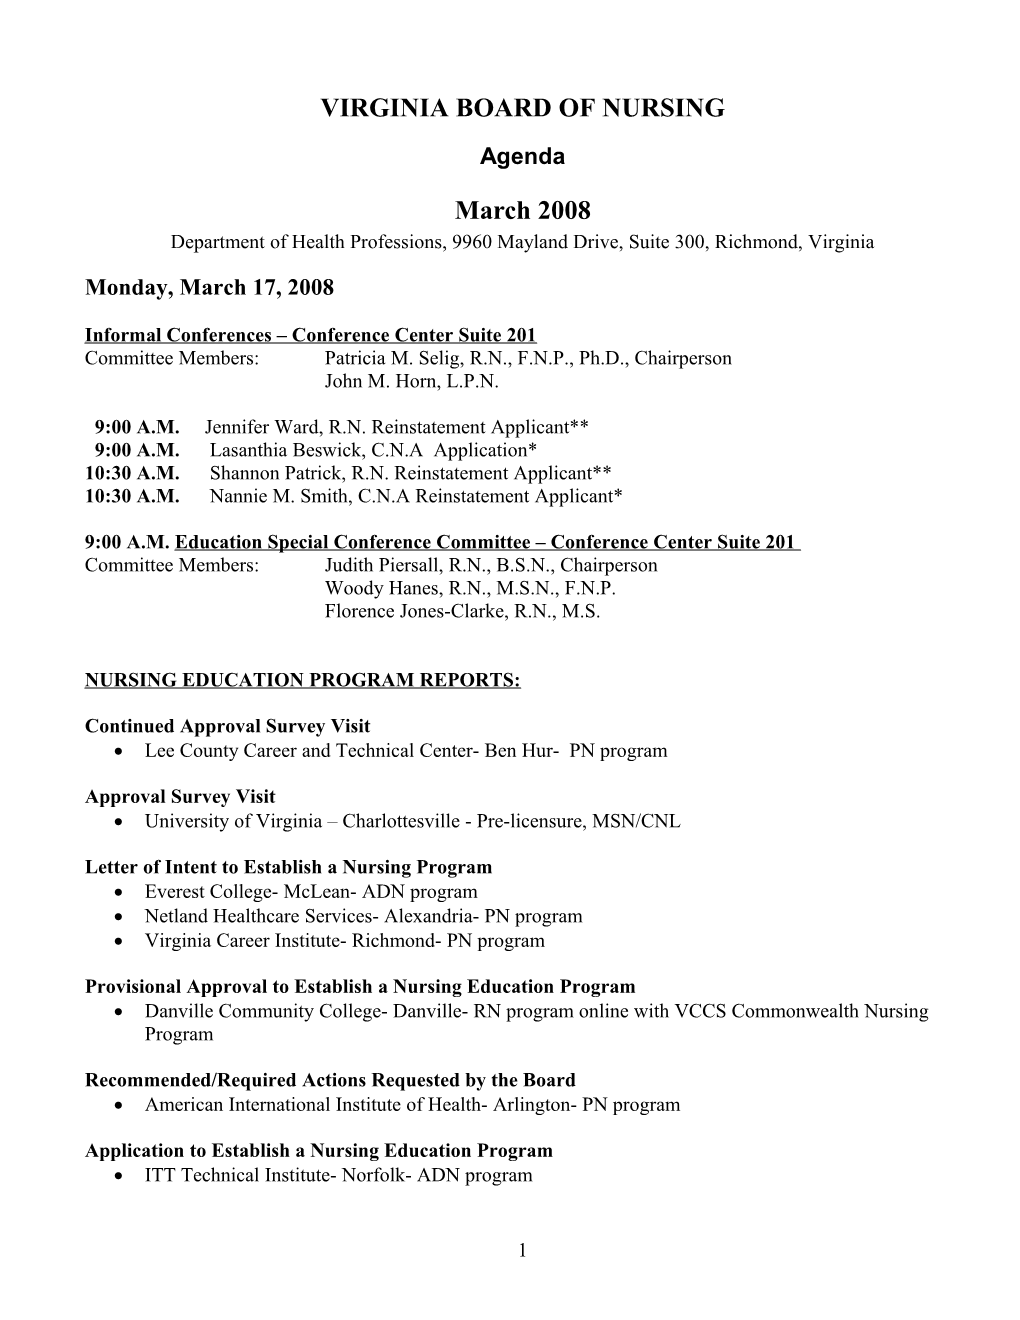 VIRGINIA BOARD of NURSING - March 2008 Agenda